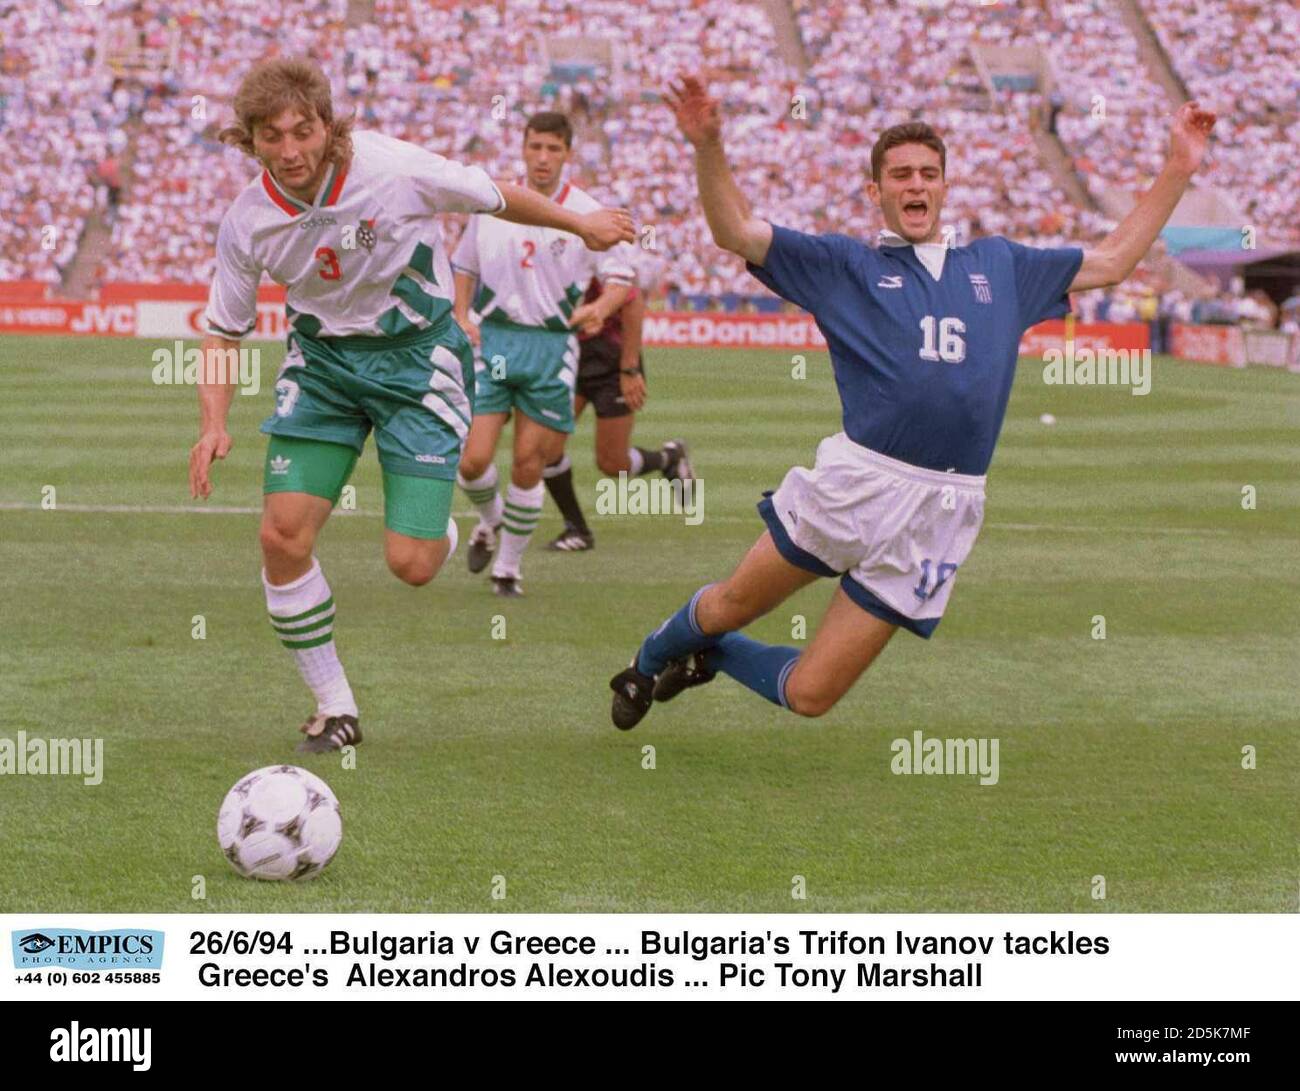 26/6/94 ...Bulgaria v Greece ... Bulgaria's Trifon Ivanov tackles Greece's  Alexandros Alexoudis Stock Photo